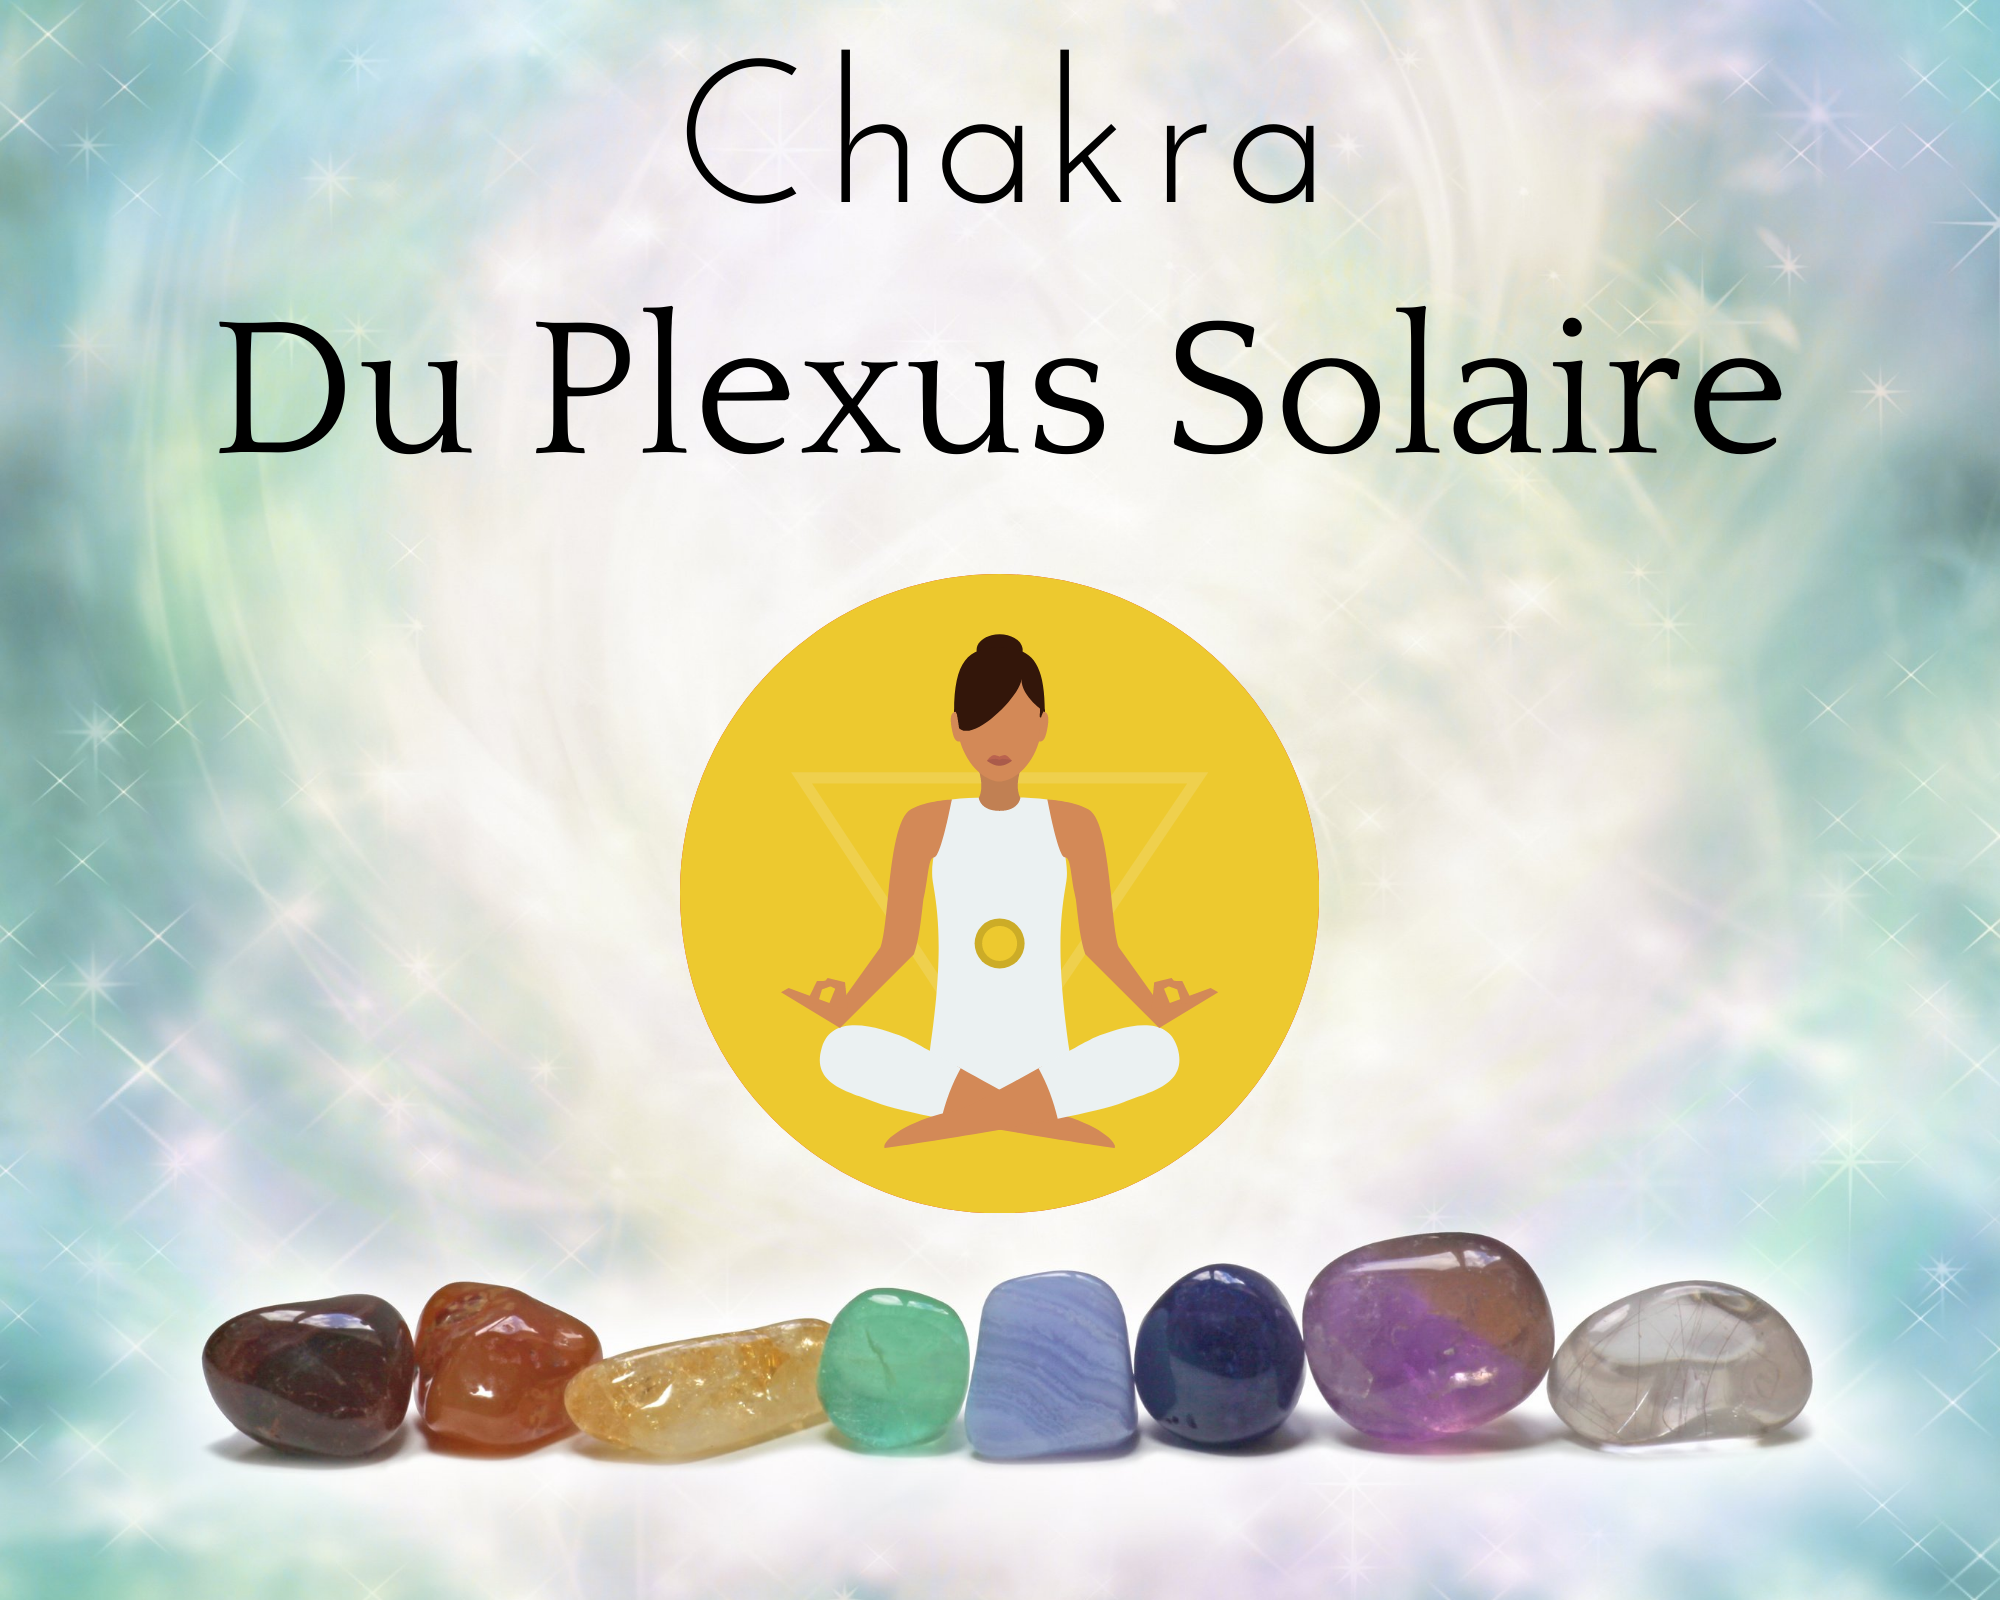 Le Chakra du Plexus solaire ou Manipura : Troisième des sept chakras